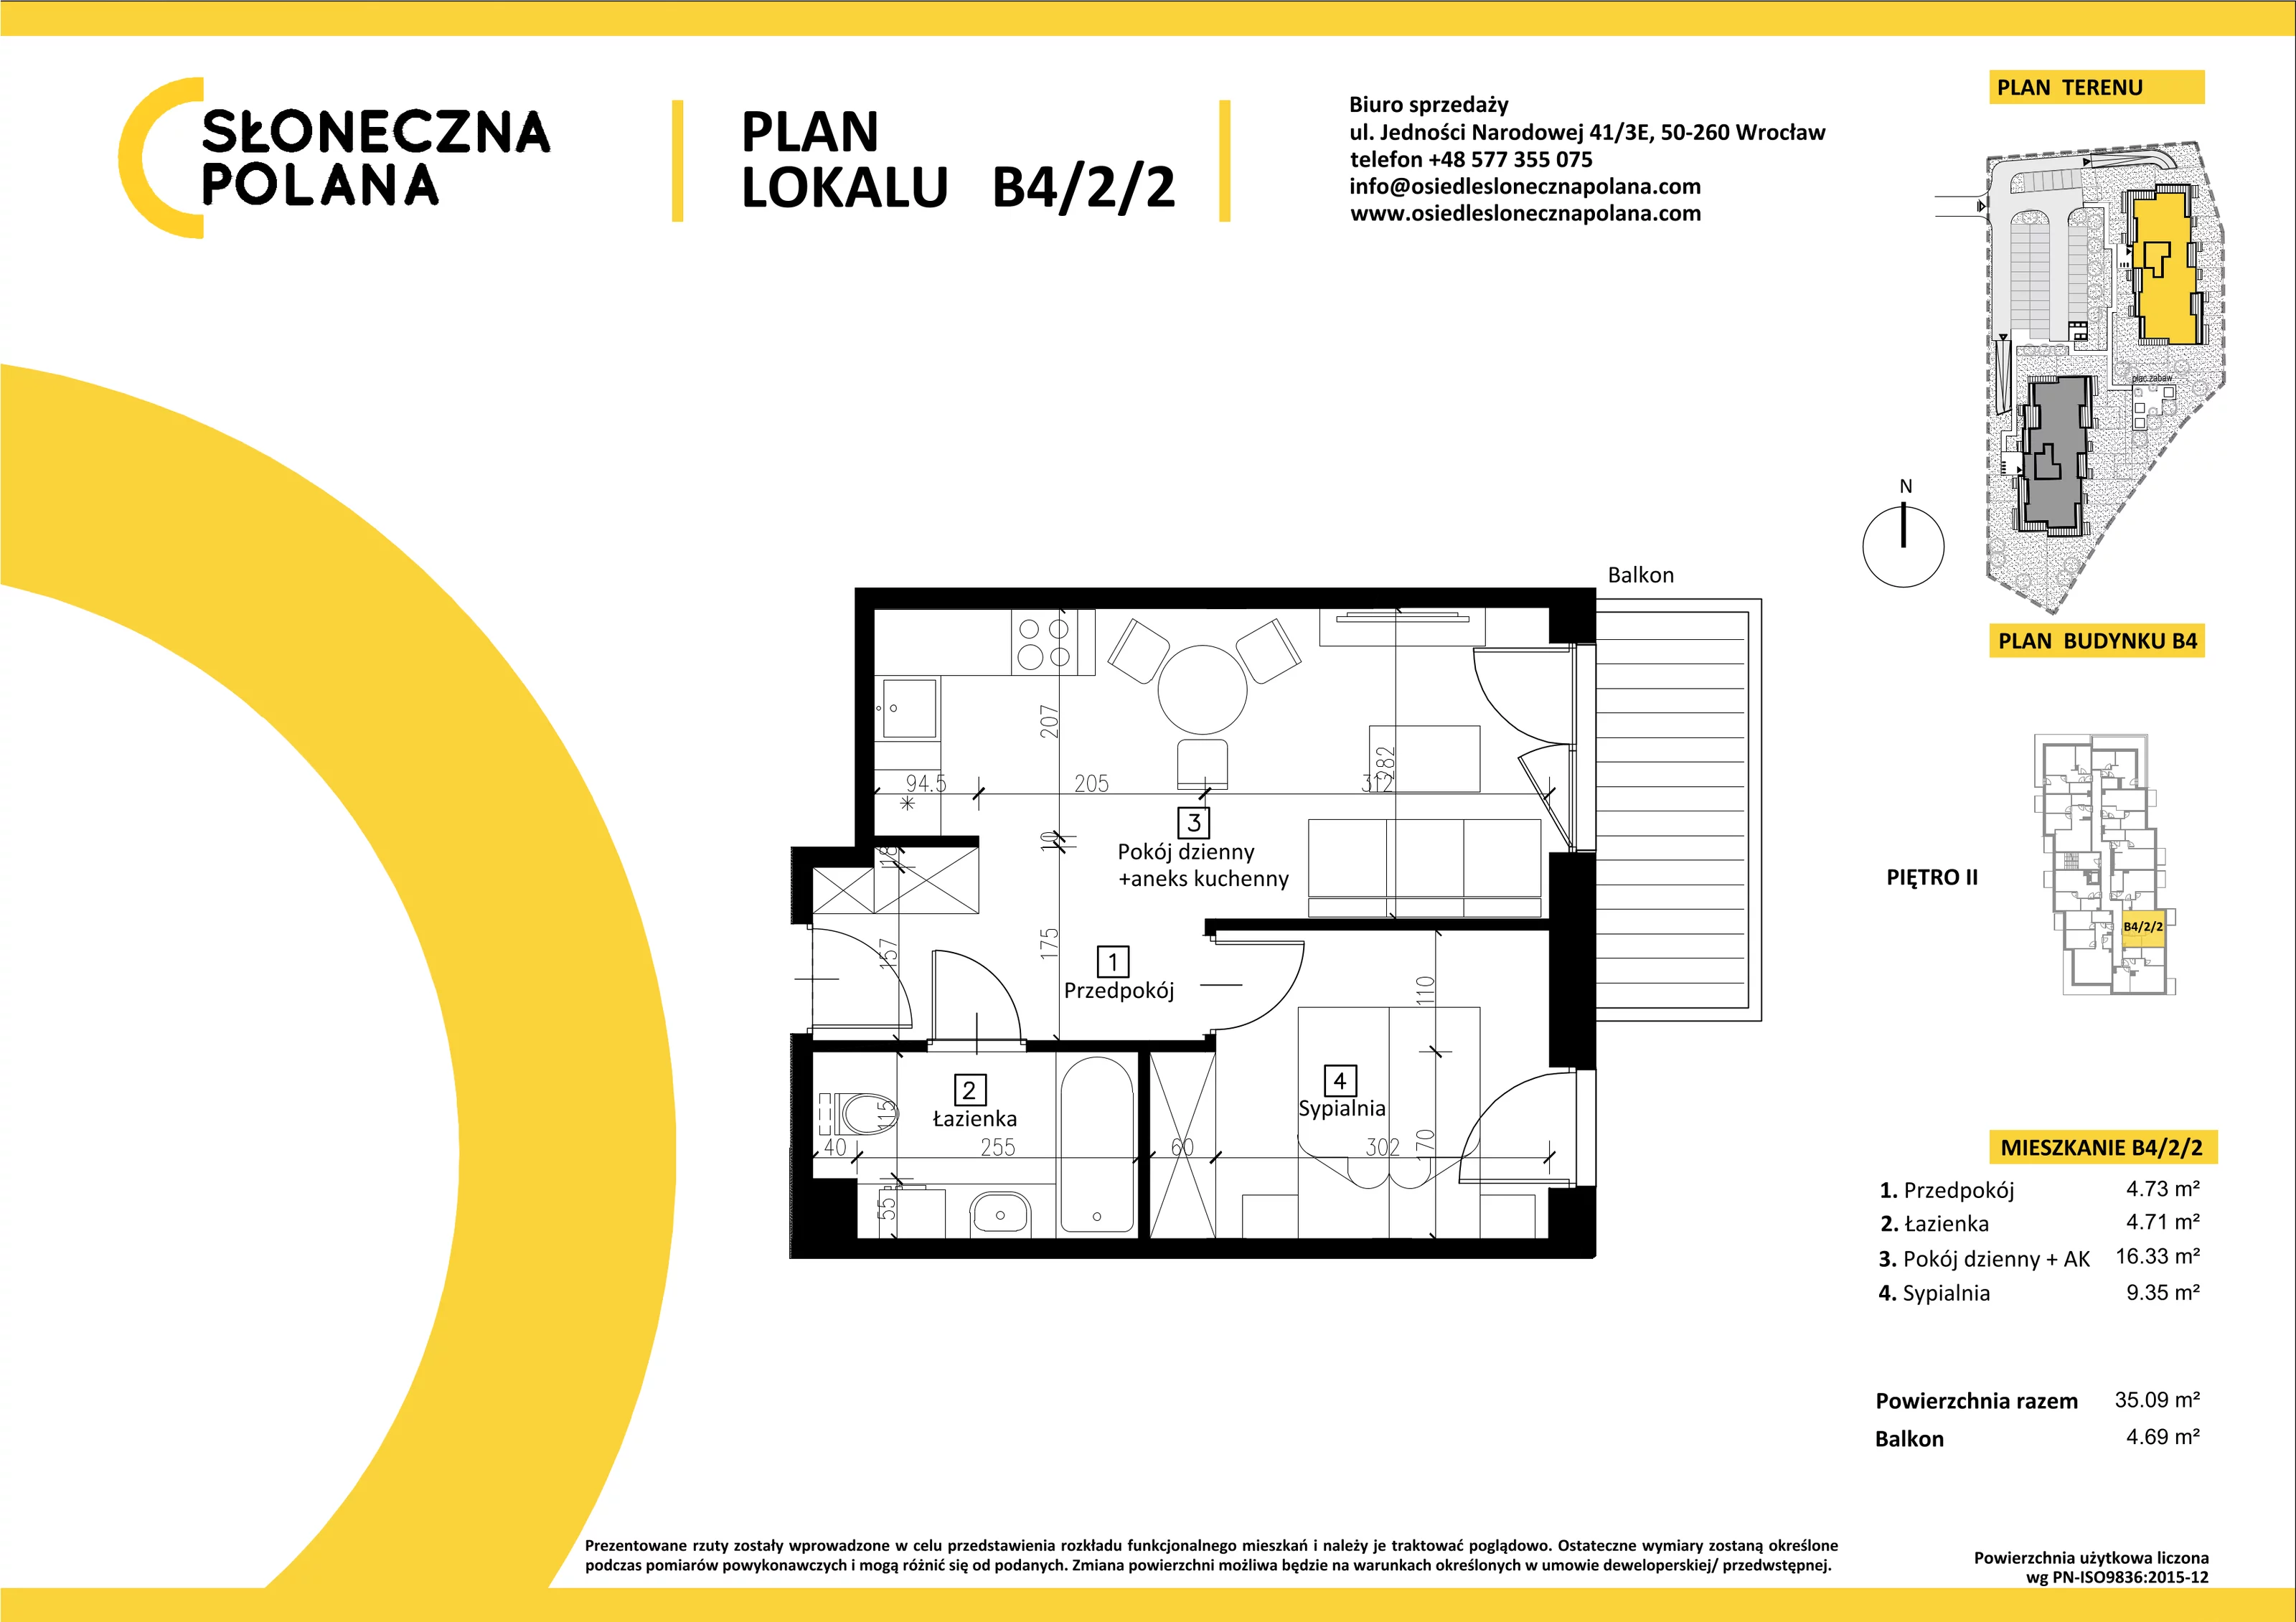 Mieszkanie 35,09 m², piętro 2, oferta nr B4/2/2, Słoneczna Polana, Kudowa-Zdrój, ul. Bluszczowa